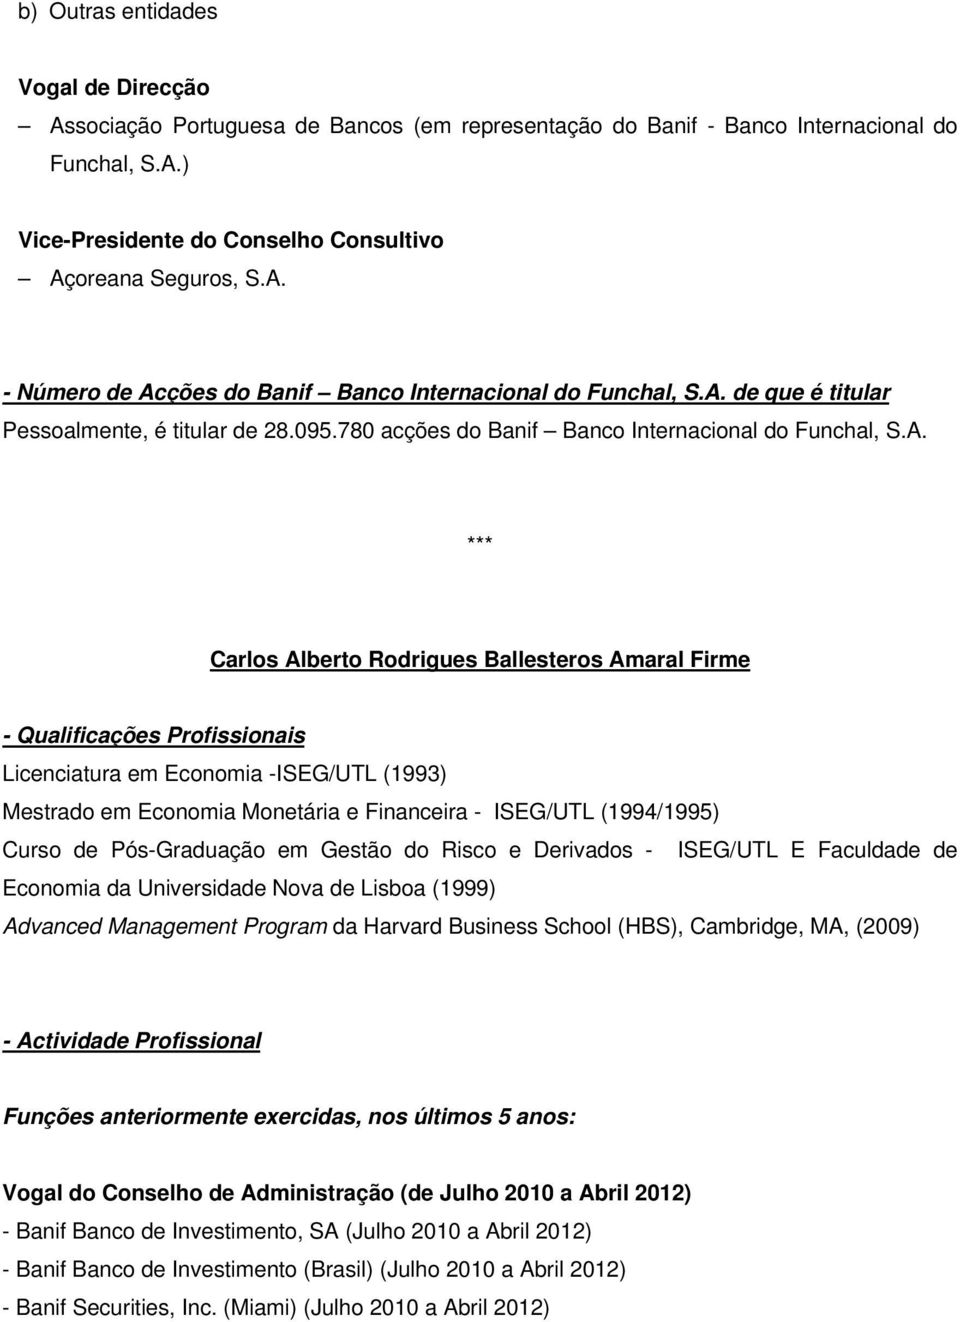 *** Carlos Alberto Rodrigues Ballesteros Amaral Firme Licenciatura em Economia -ISEG/UTL (1993) Mestrado em Economia Monetária e Financeira - ISEG/UTL (1994/1995) Curso de Pós-Graduação em Gestão do